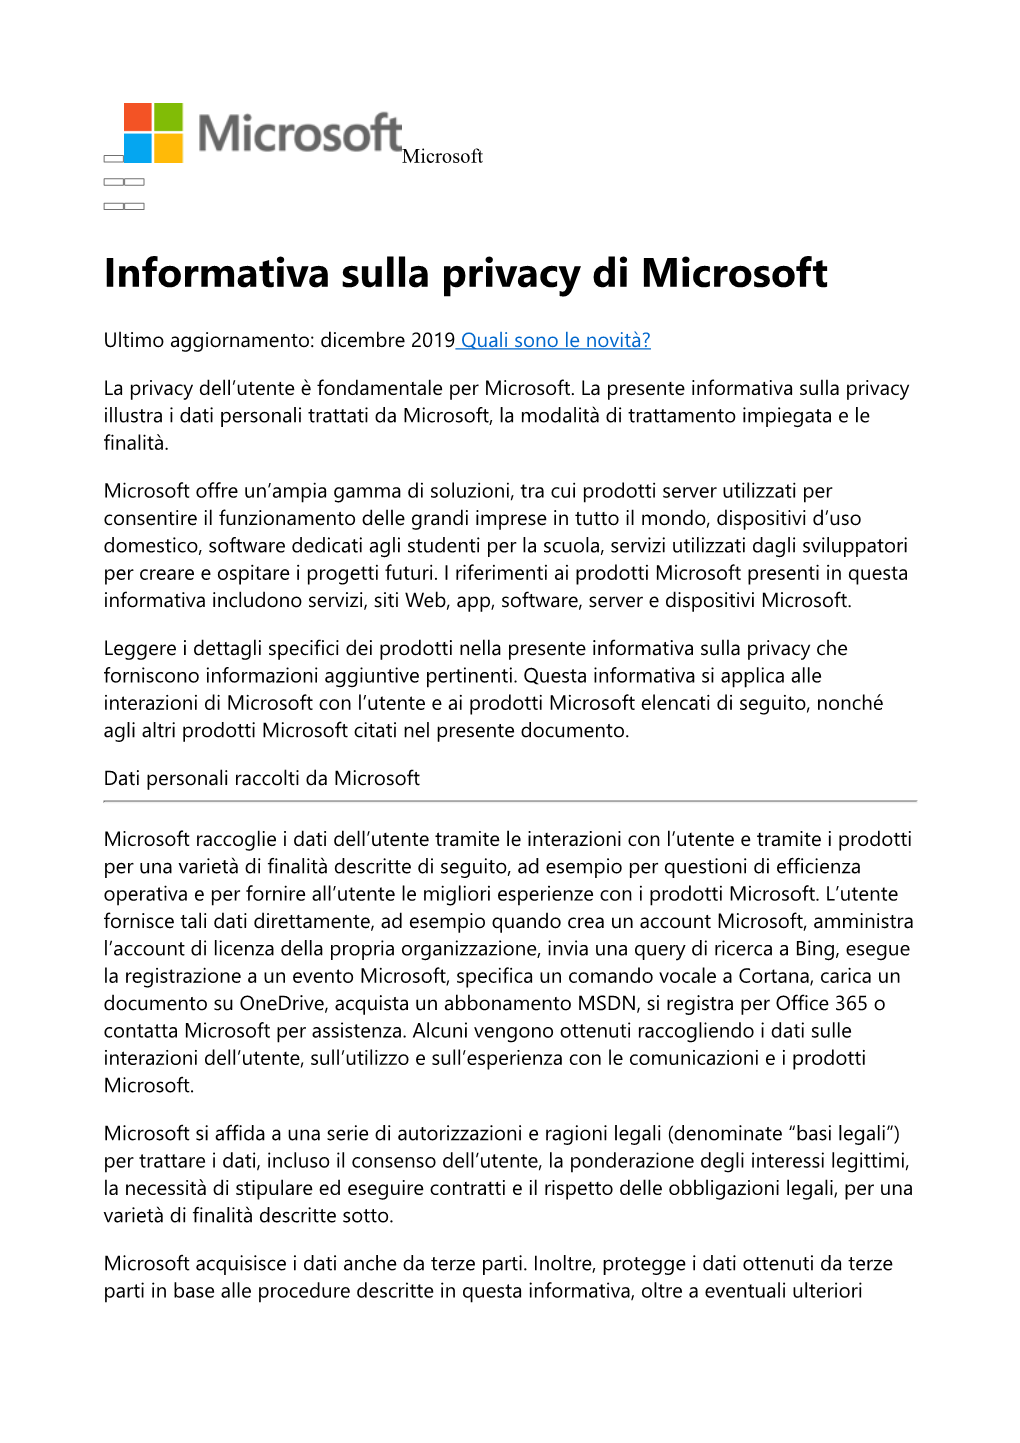 Informativa Sulla Privacy Di Microsoft